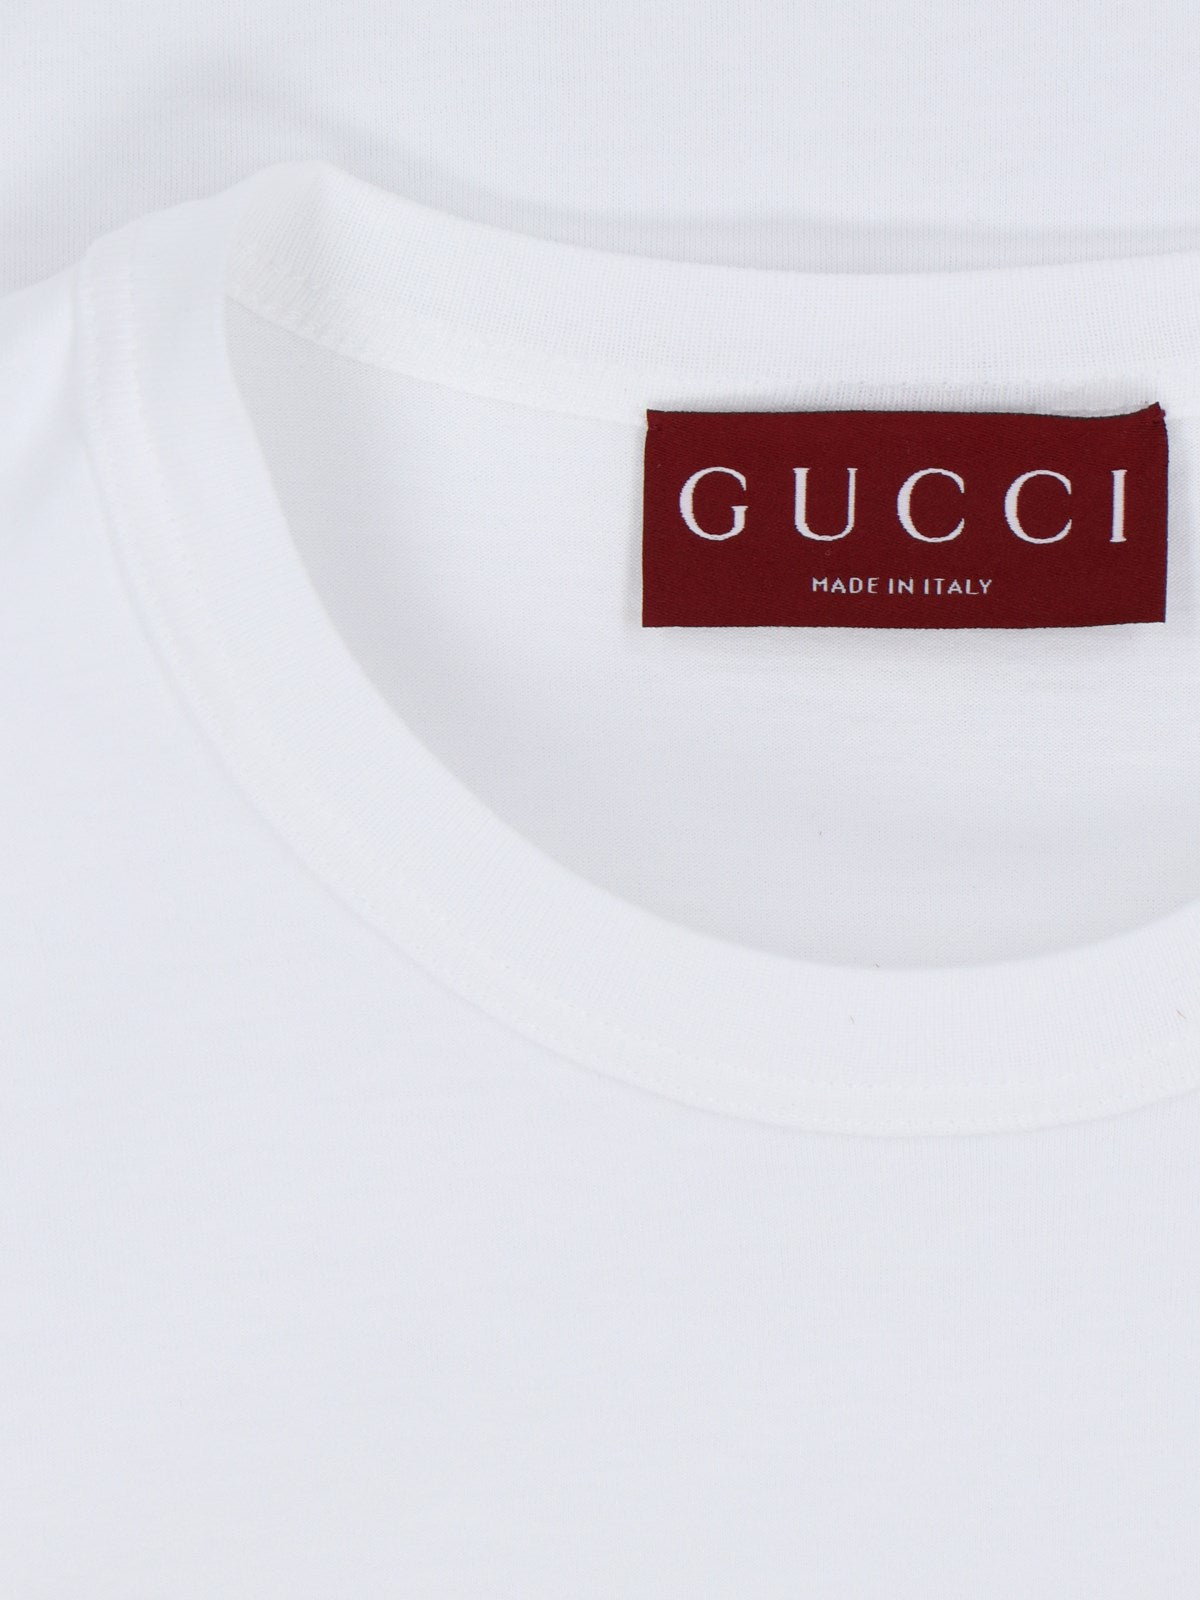 Gucci T-Shirt basic-t-shirt-Gucci-T-shirt basic Gucci, in cotone bianco, girocollo, maniche corte, etichetta tricolore retro, orlo dritto.-Dresso